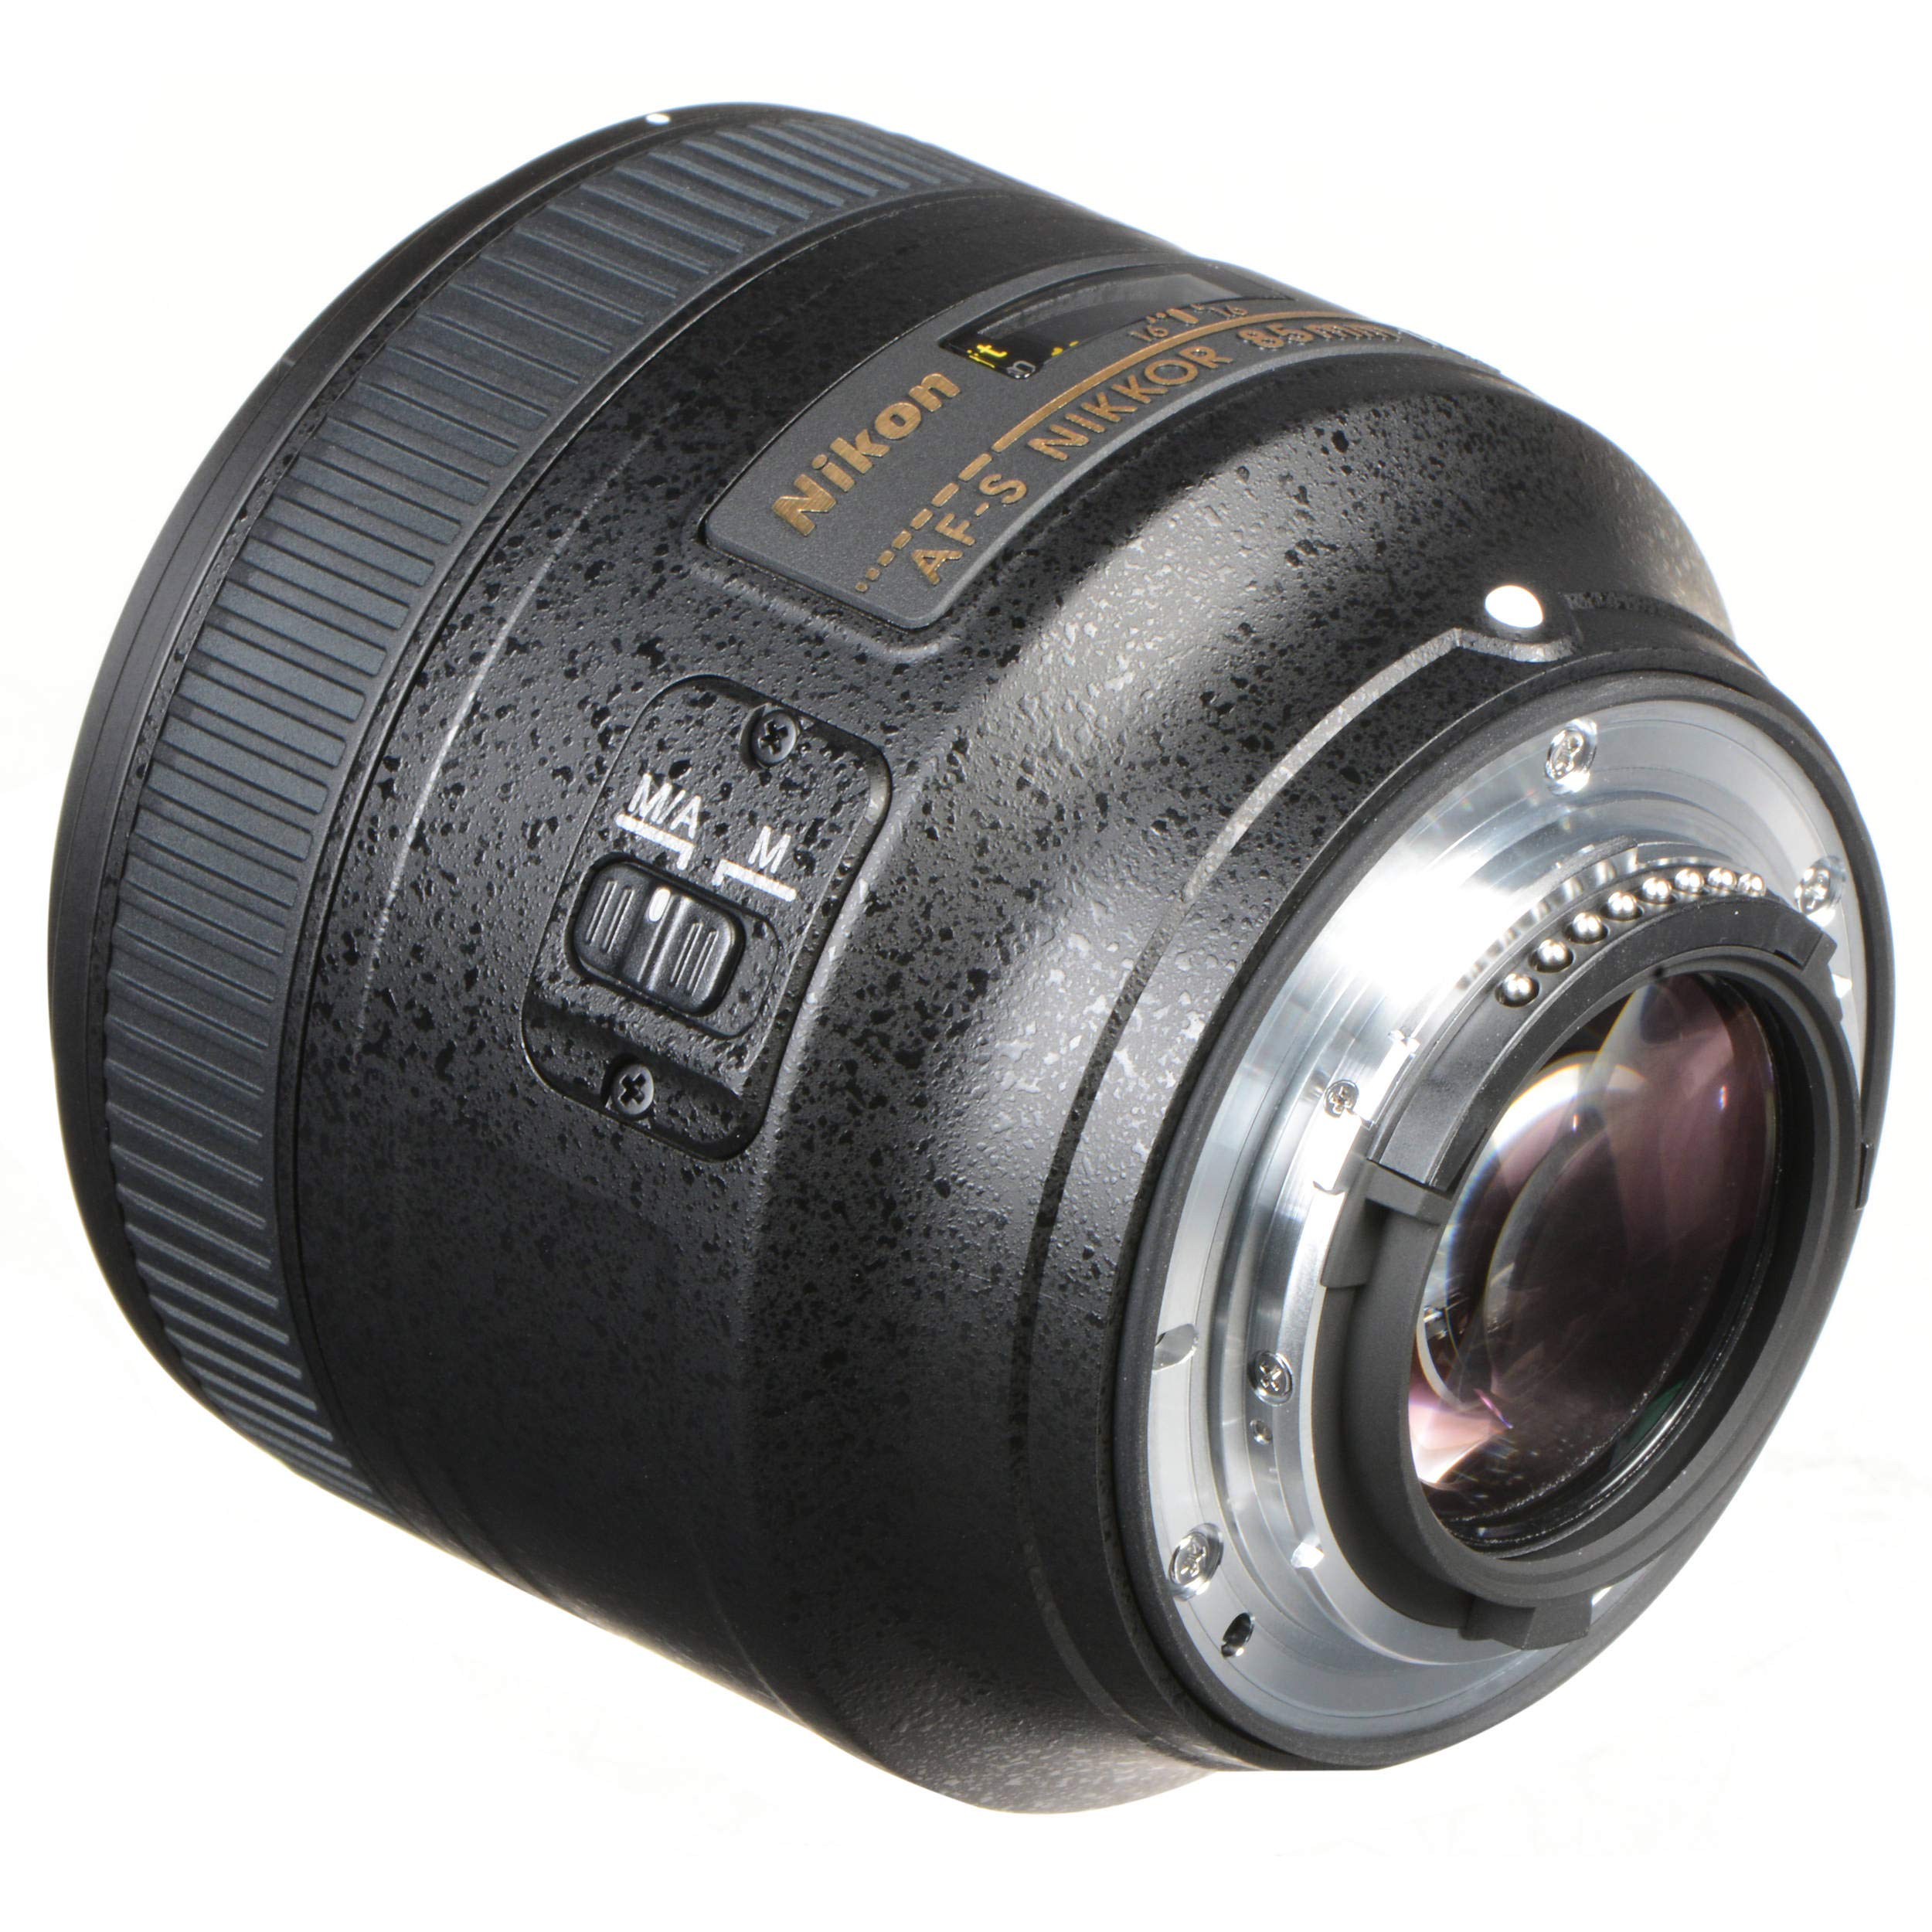 Nikon 85MM f.1.8G AF-S Lens (Intl Model) + Vivitar Graduated Color Filter Set + Cleaning Kit